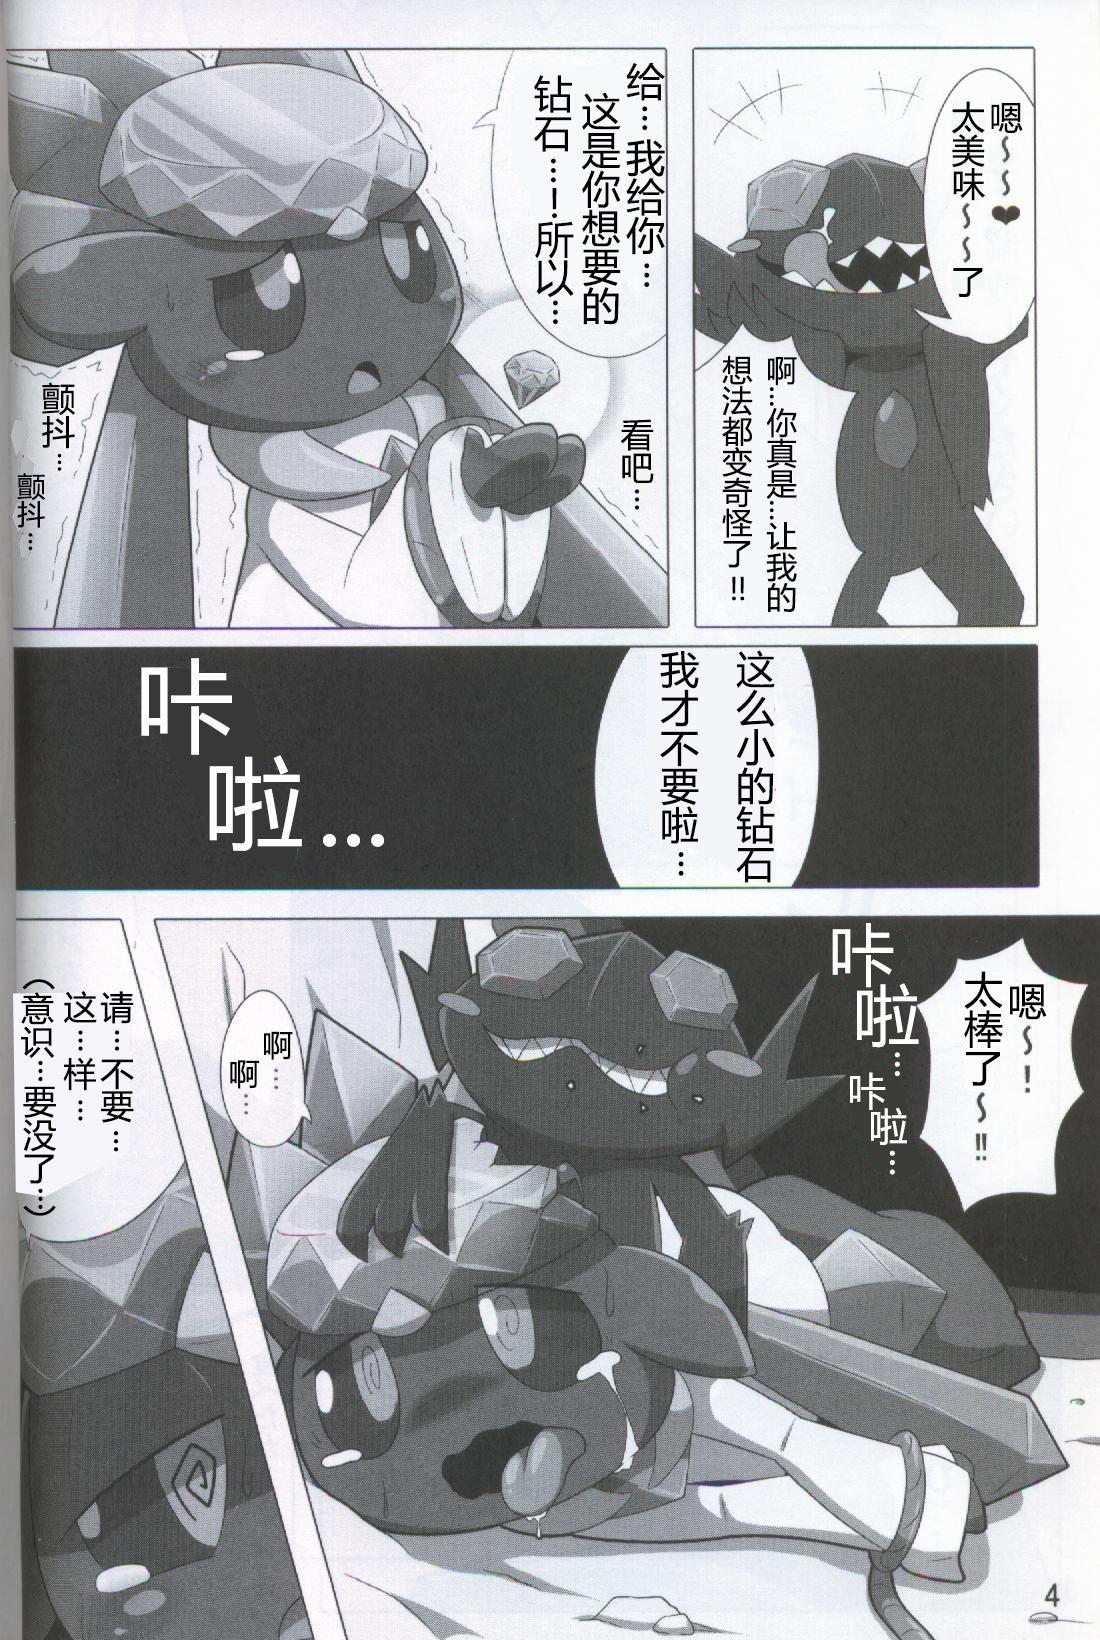 Femboy Pokéda | 宝可堕 - Pokemon Alt - Page 5